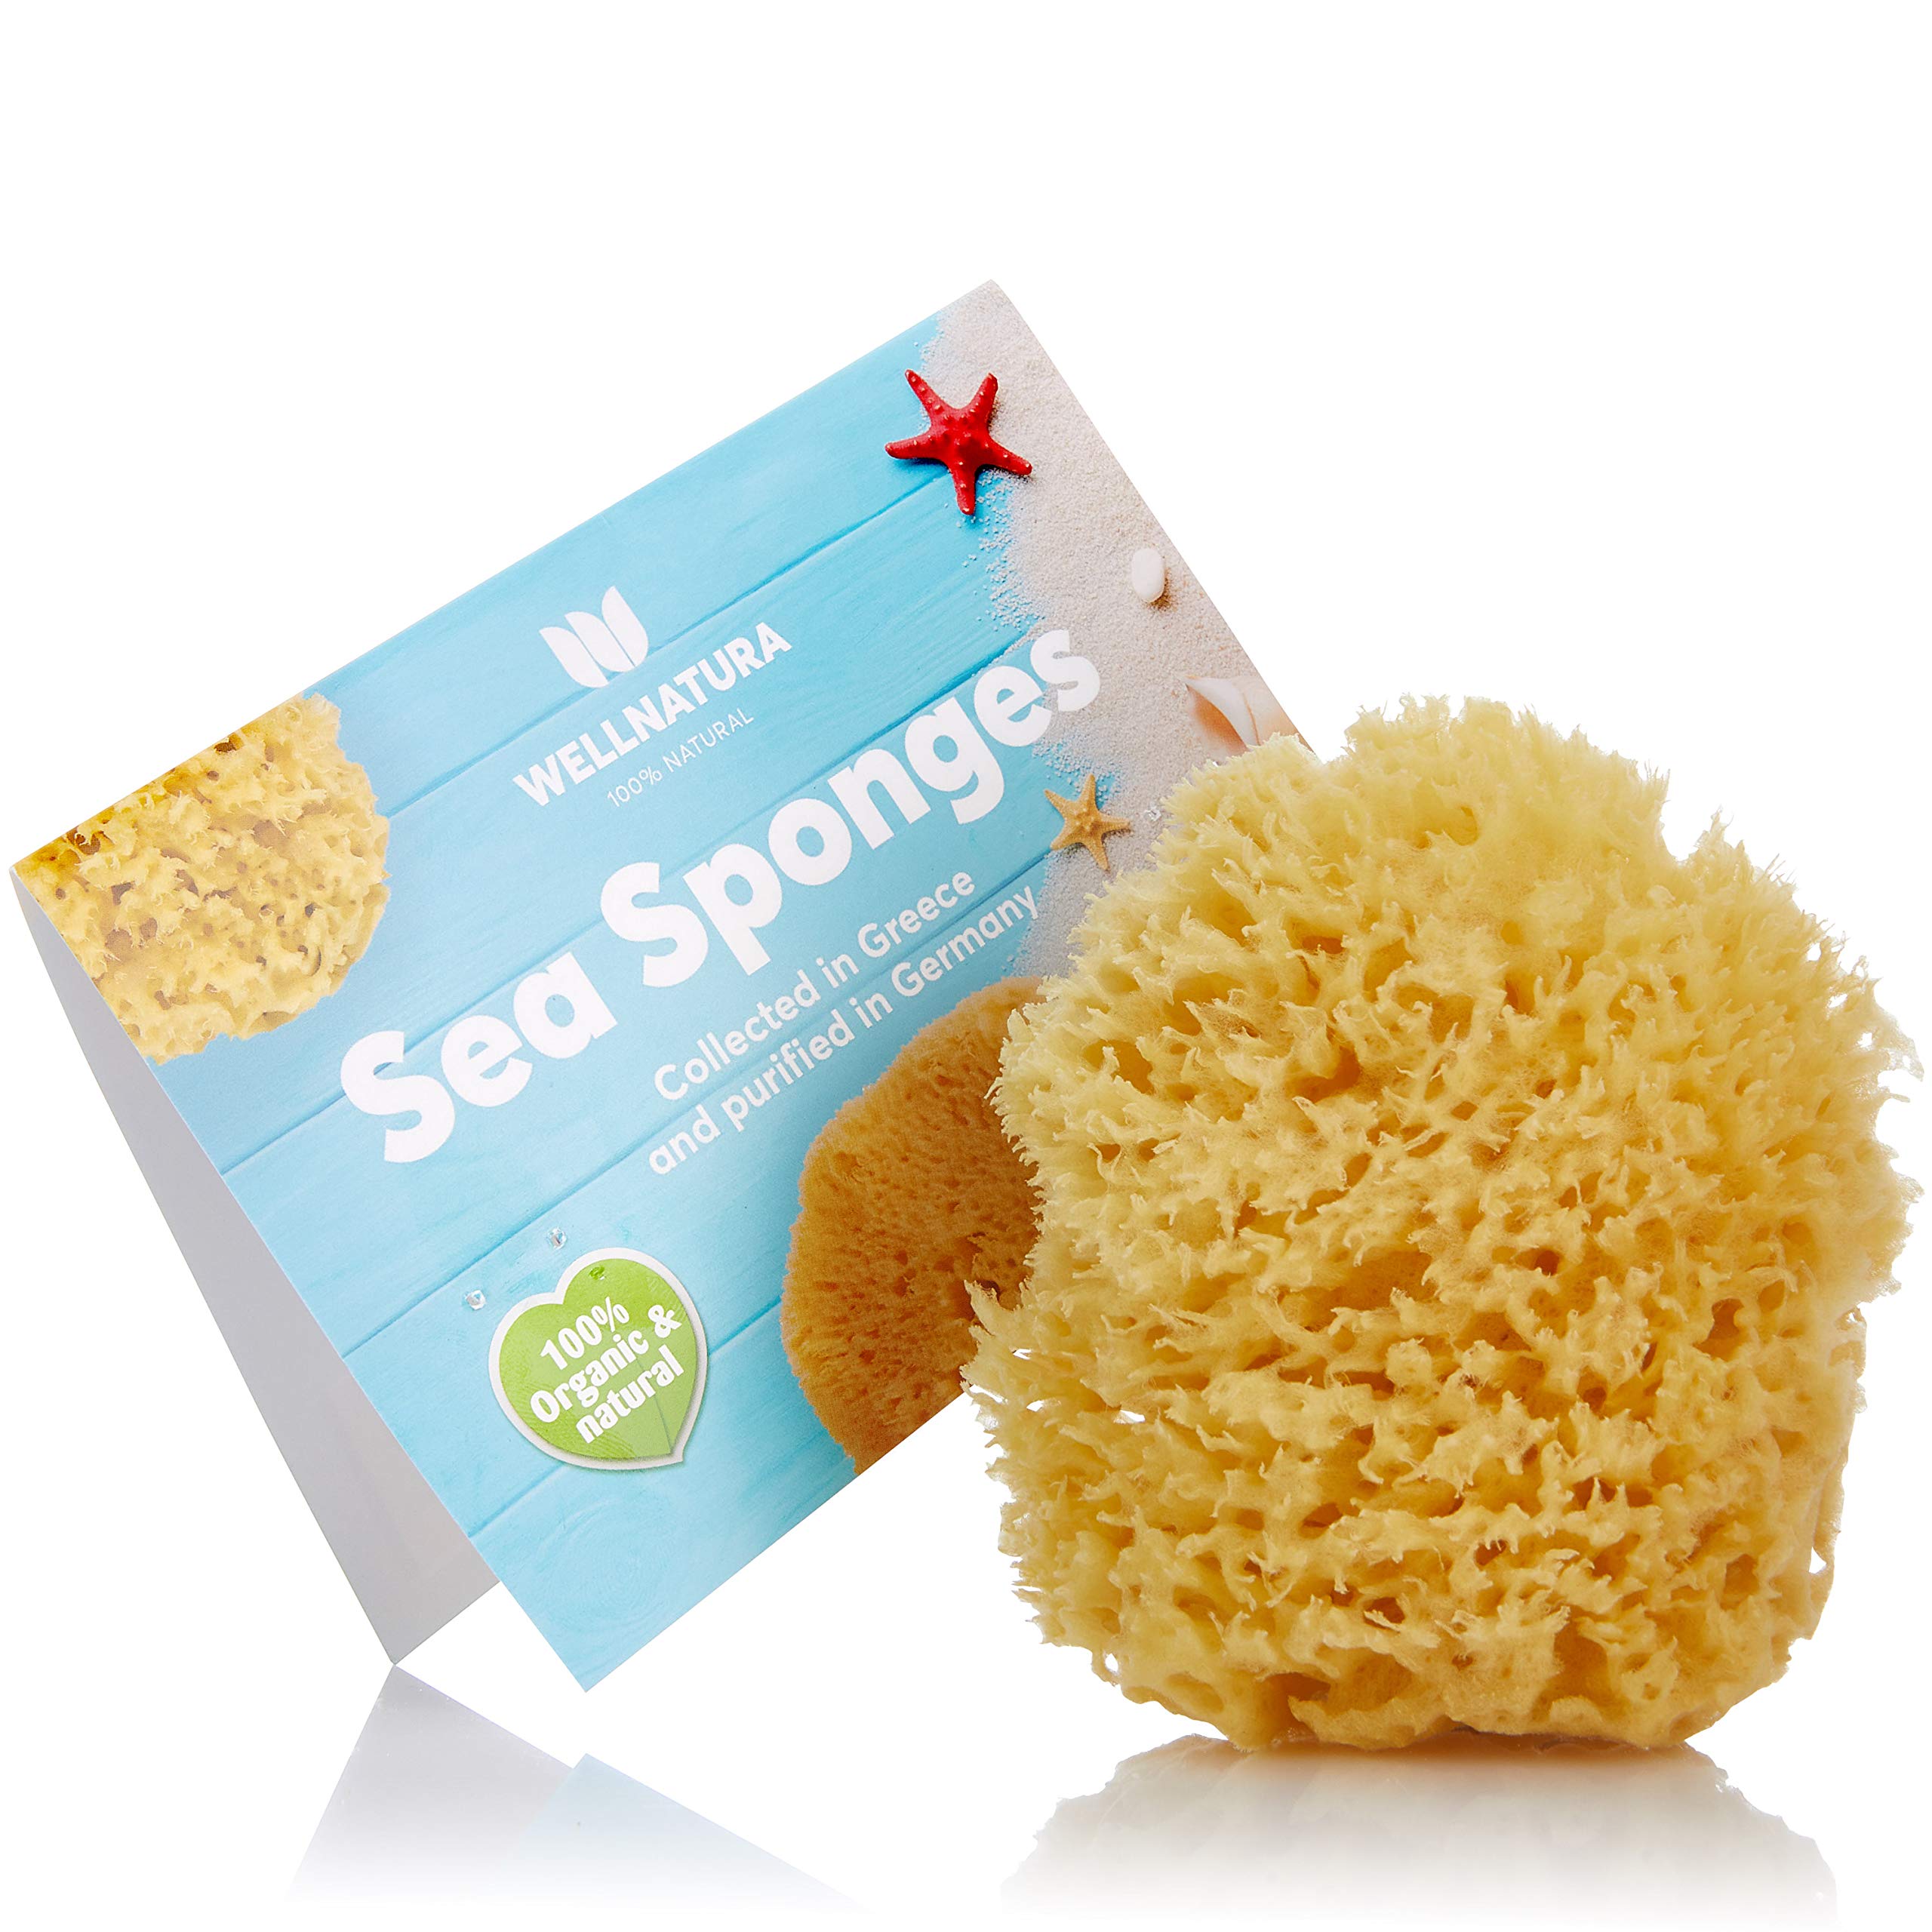 Sea Sponge for Bathing - 100% Natural - 4 (Large) - Soft Sensitive